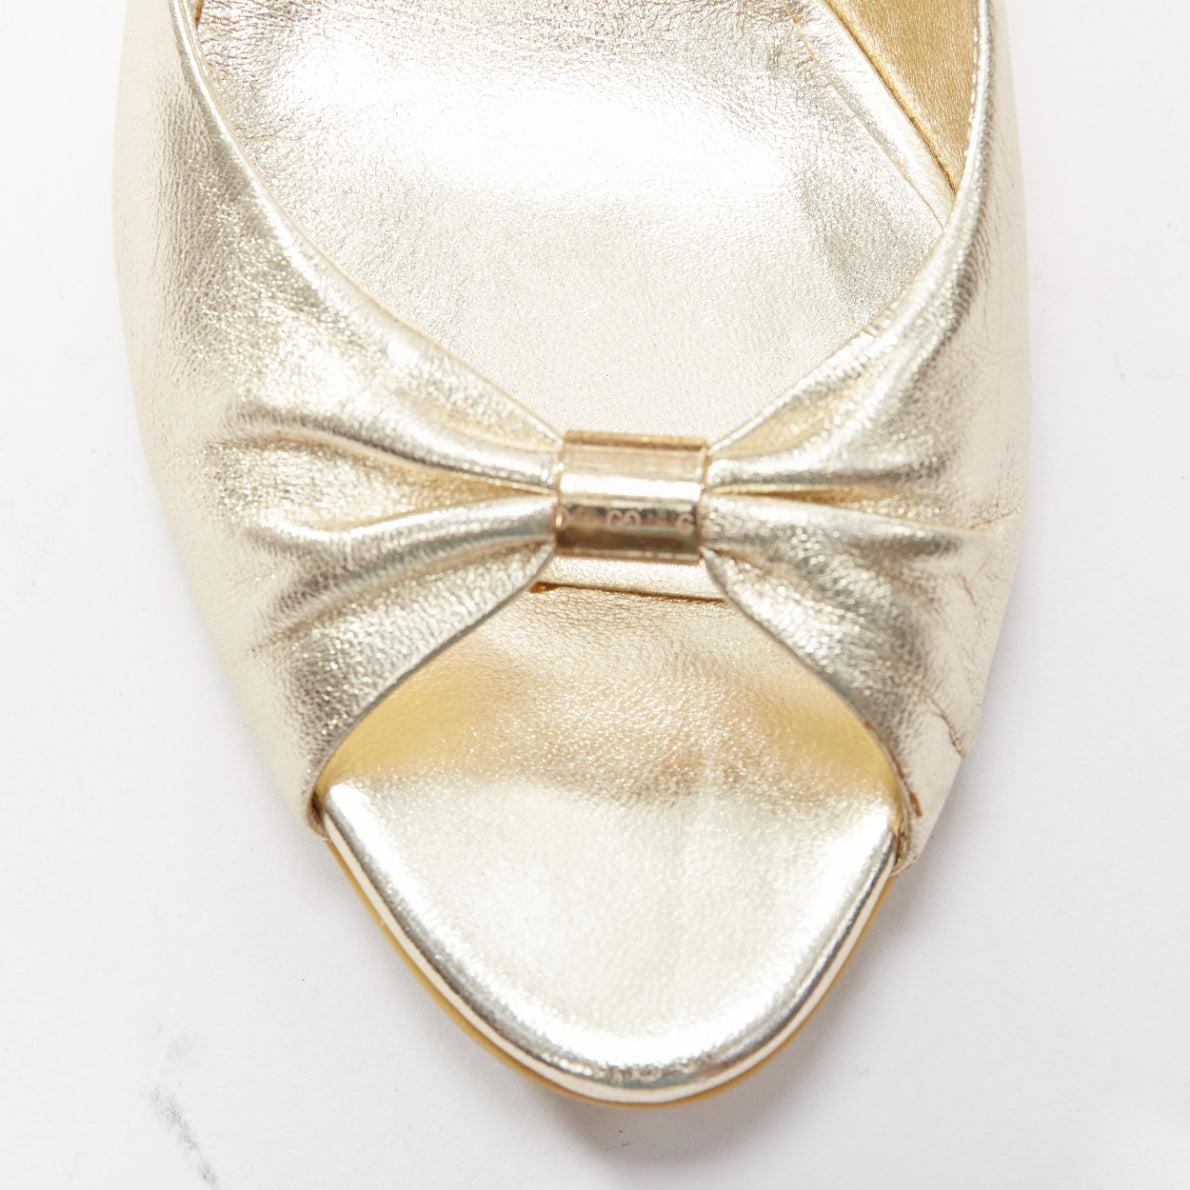 GUCCI metallic gold leather bow open toe cord metal wedge mid heel EU36.5 2